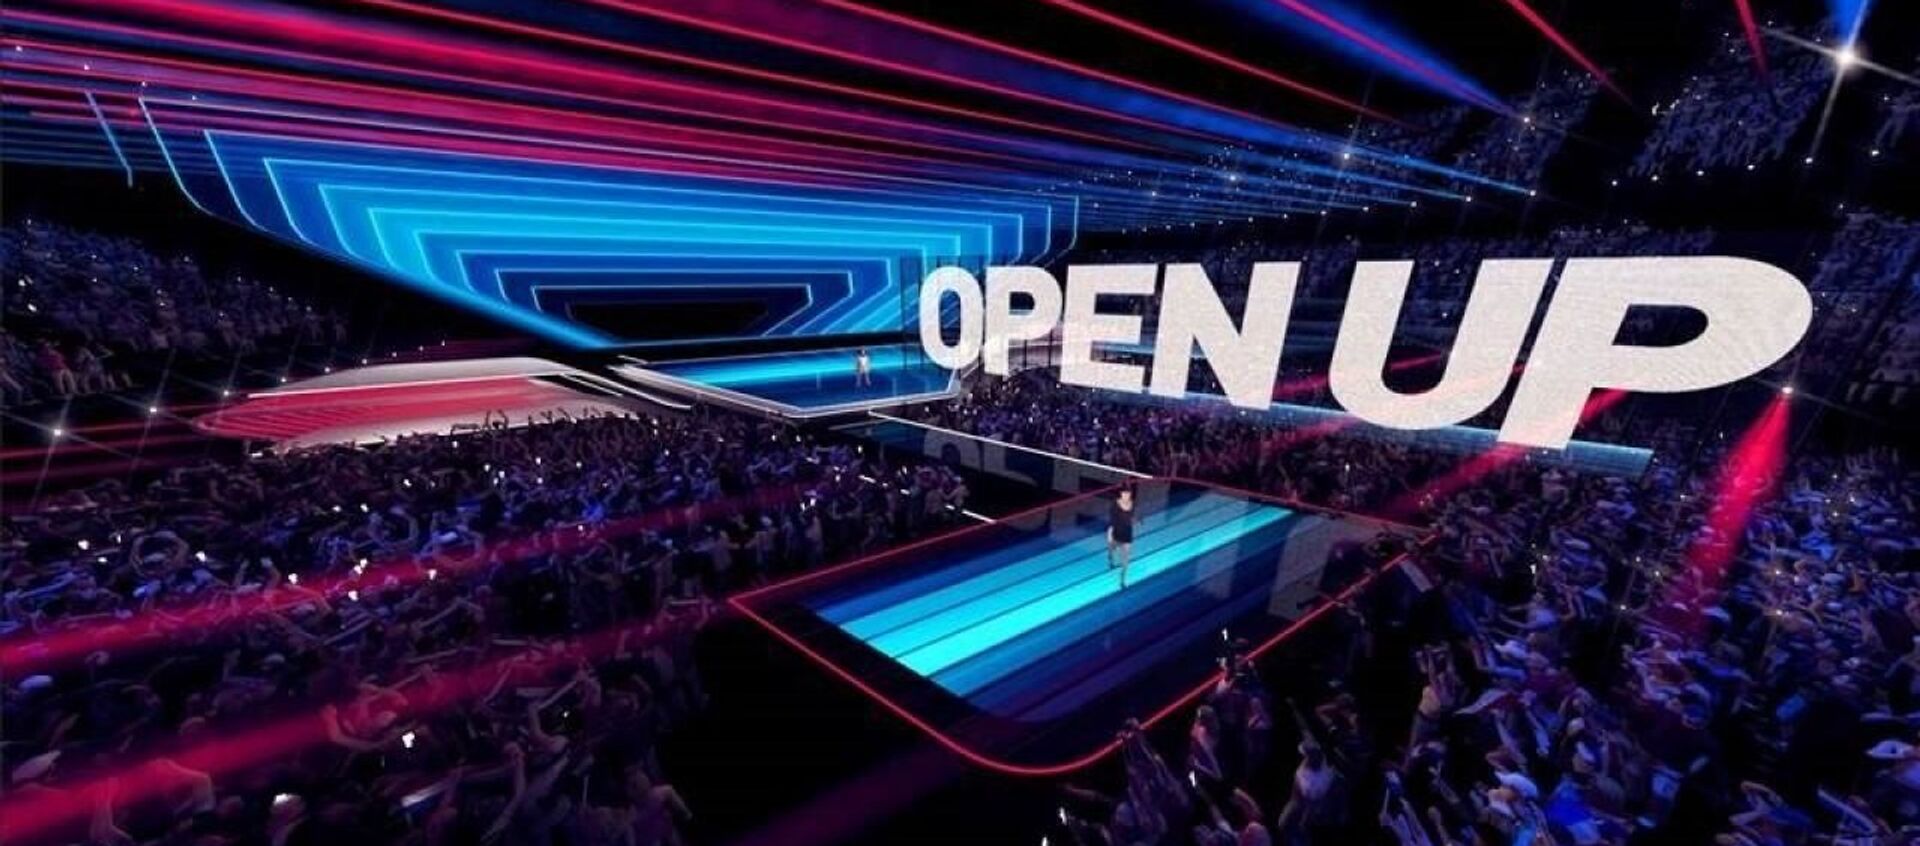 На сцене Евровидения в Роттердаме в 2021 году будет установлен полупрозрачный светодиодный экран - Sputnik Беларусь, 1920, 11.03.2021